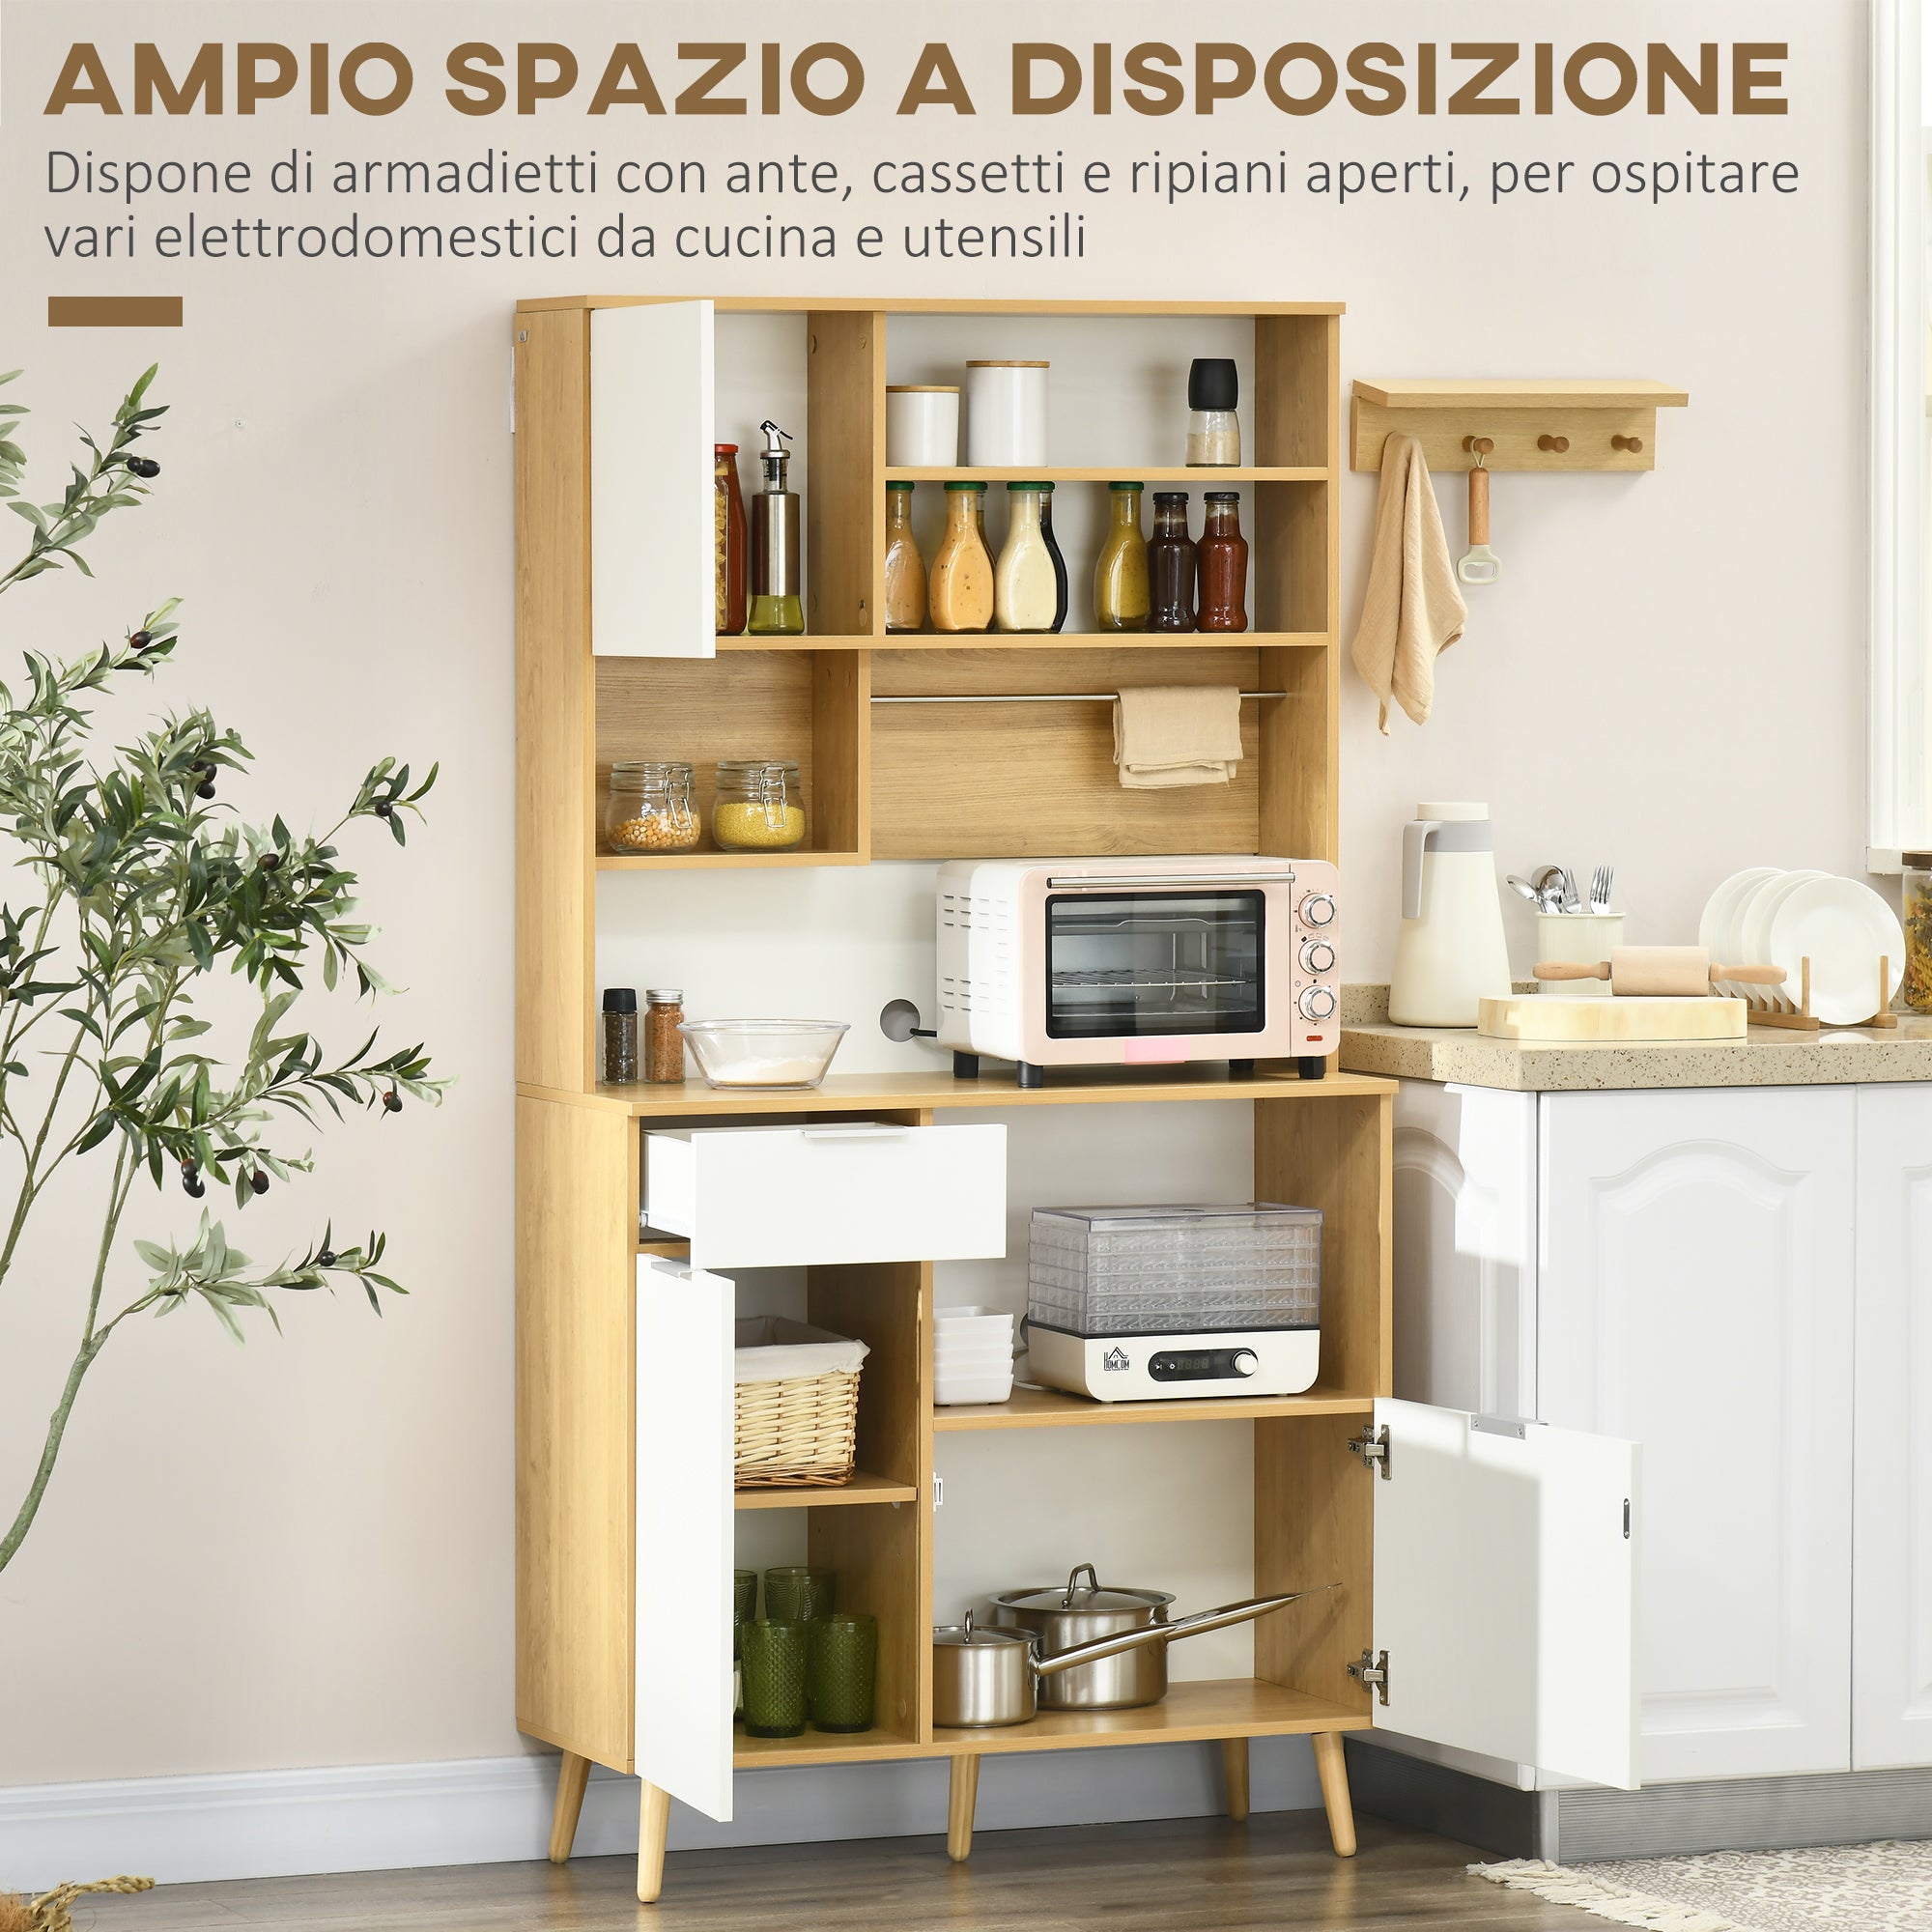 EASYCOMFORT Dispensa da Cucina in Truciolato con Armadietti, Cassetti,  Ripiani Regolabili e Appendino, 93x40x180 cm